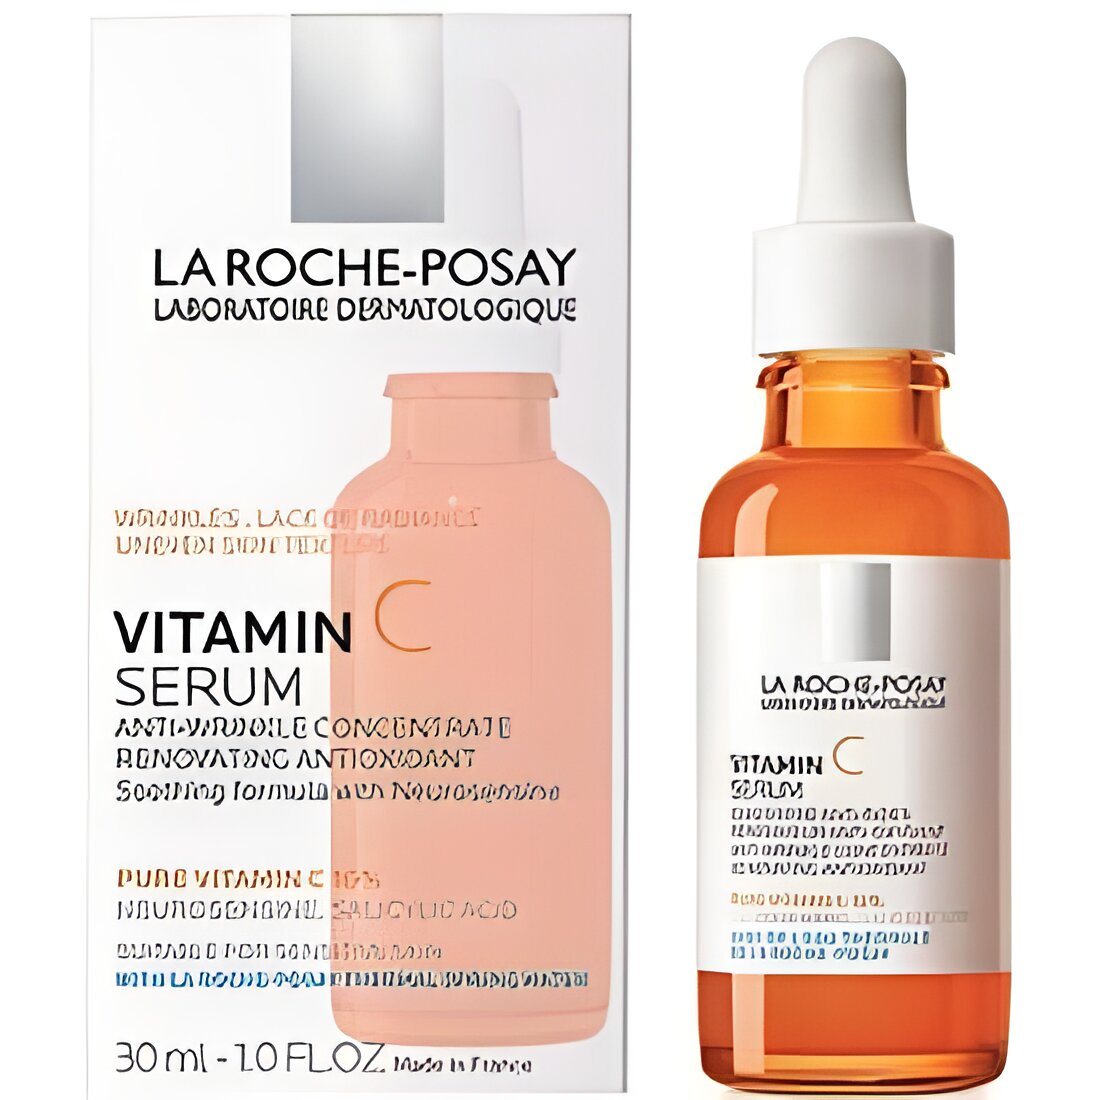 Free La Roche-Posay Vitamin C Serum